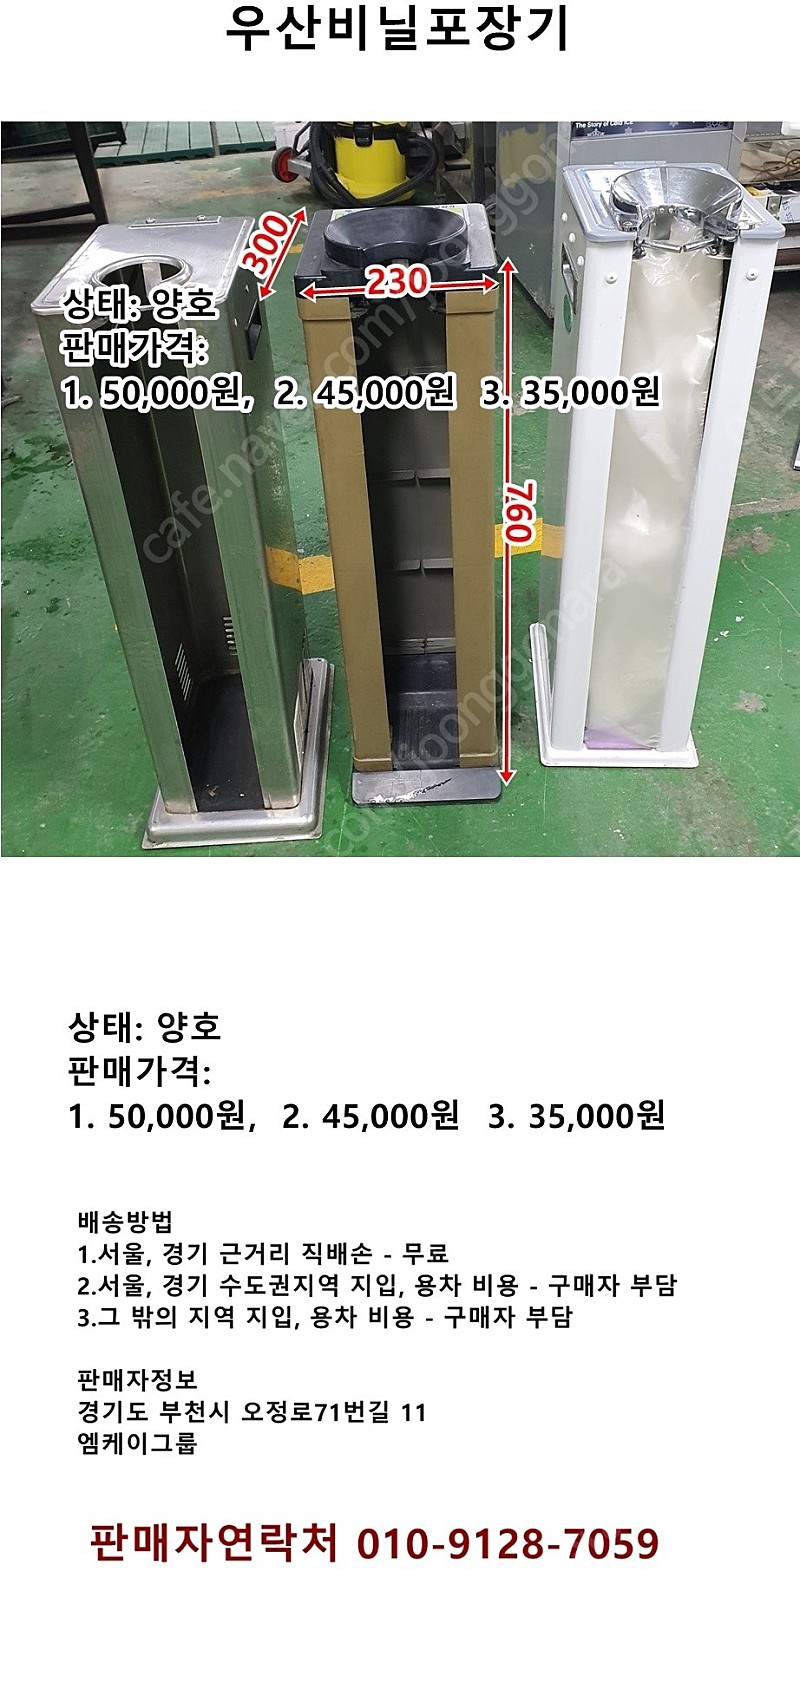 우산비닐 우산포장비닐 봉투 포장기 팝니다. 010-9128-7059